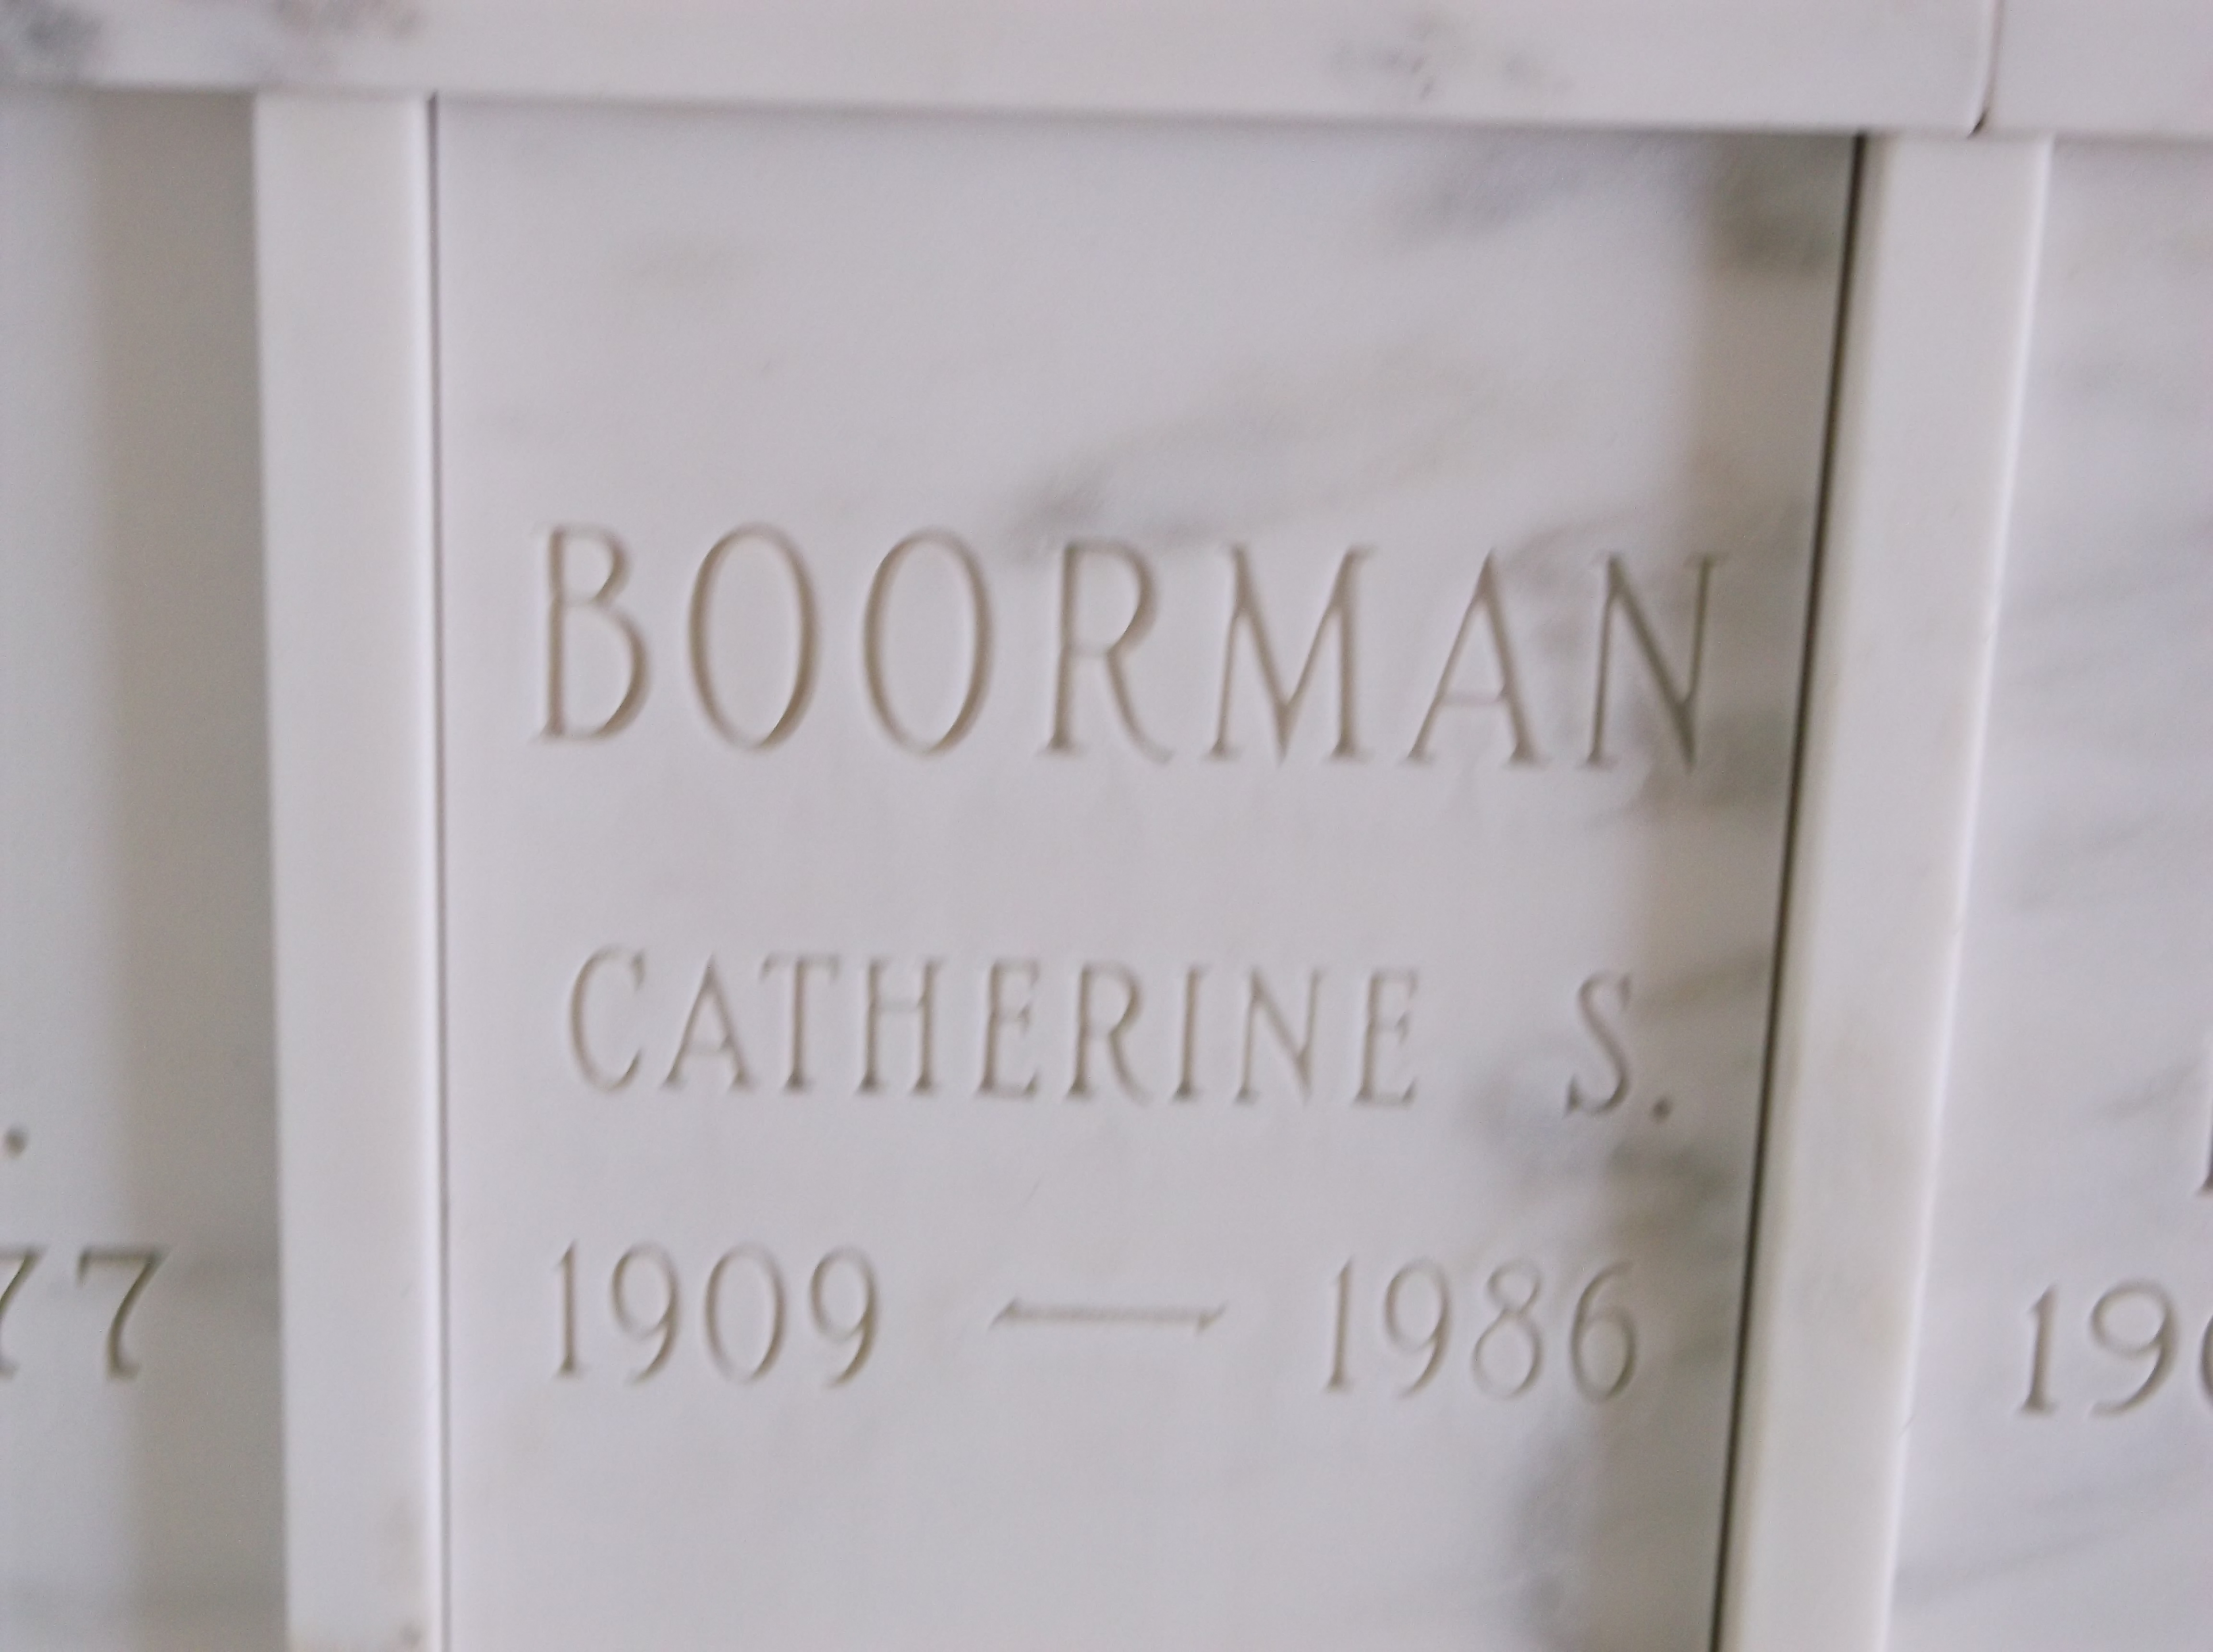 Catherine S Boorman